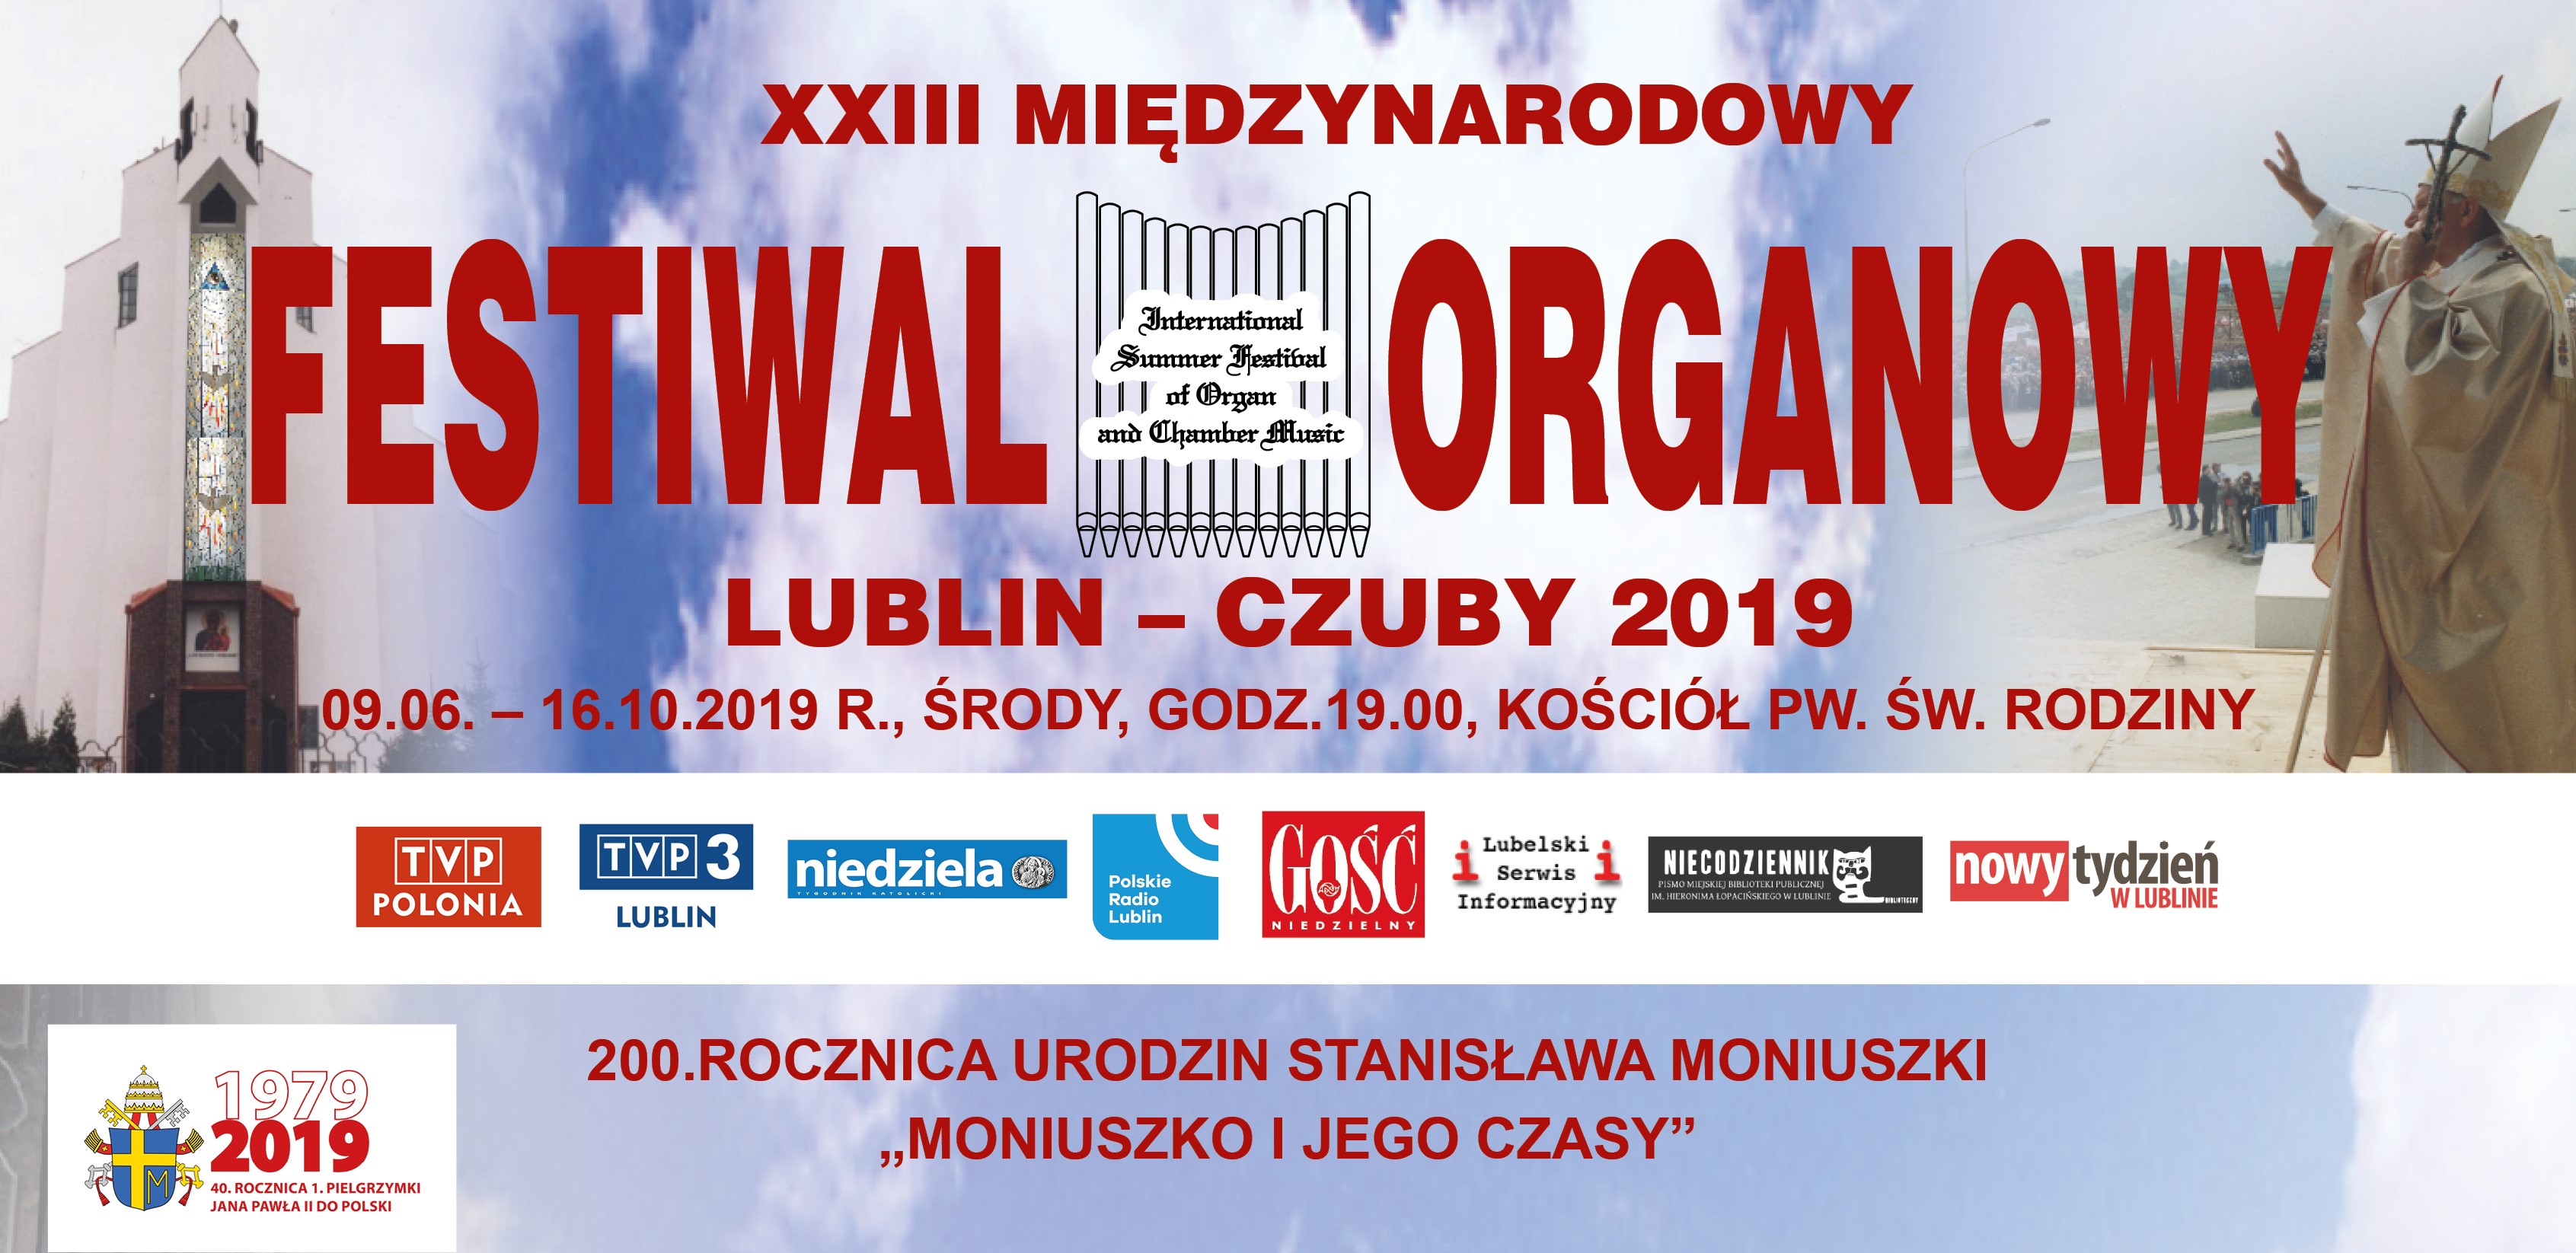 Terminarz XXIII Międzynarodowego Festiwalu Organowego Lublin-Czuby 2019